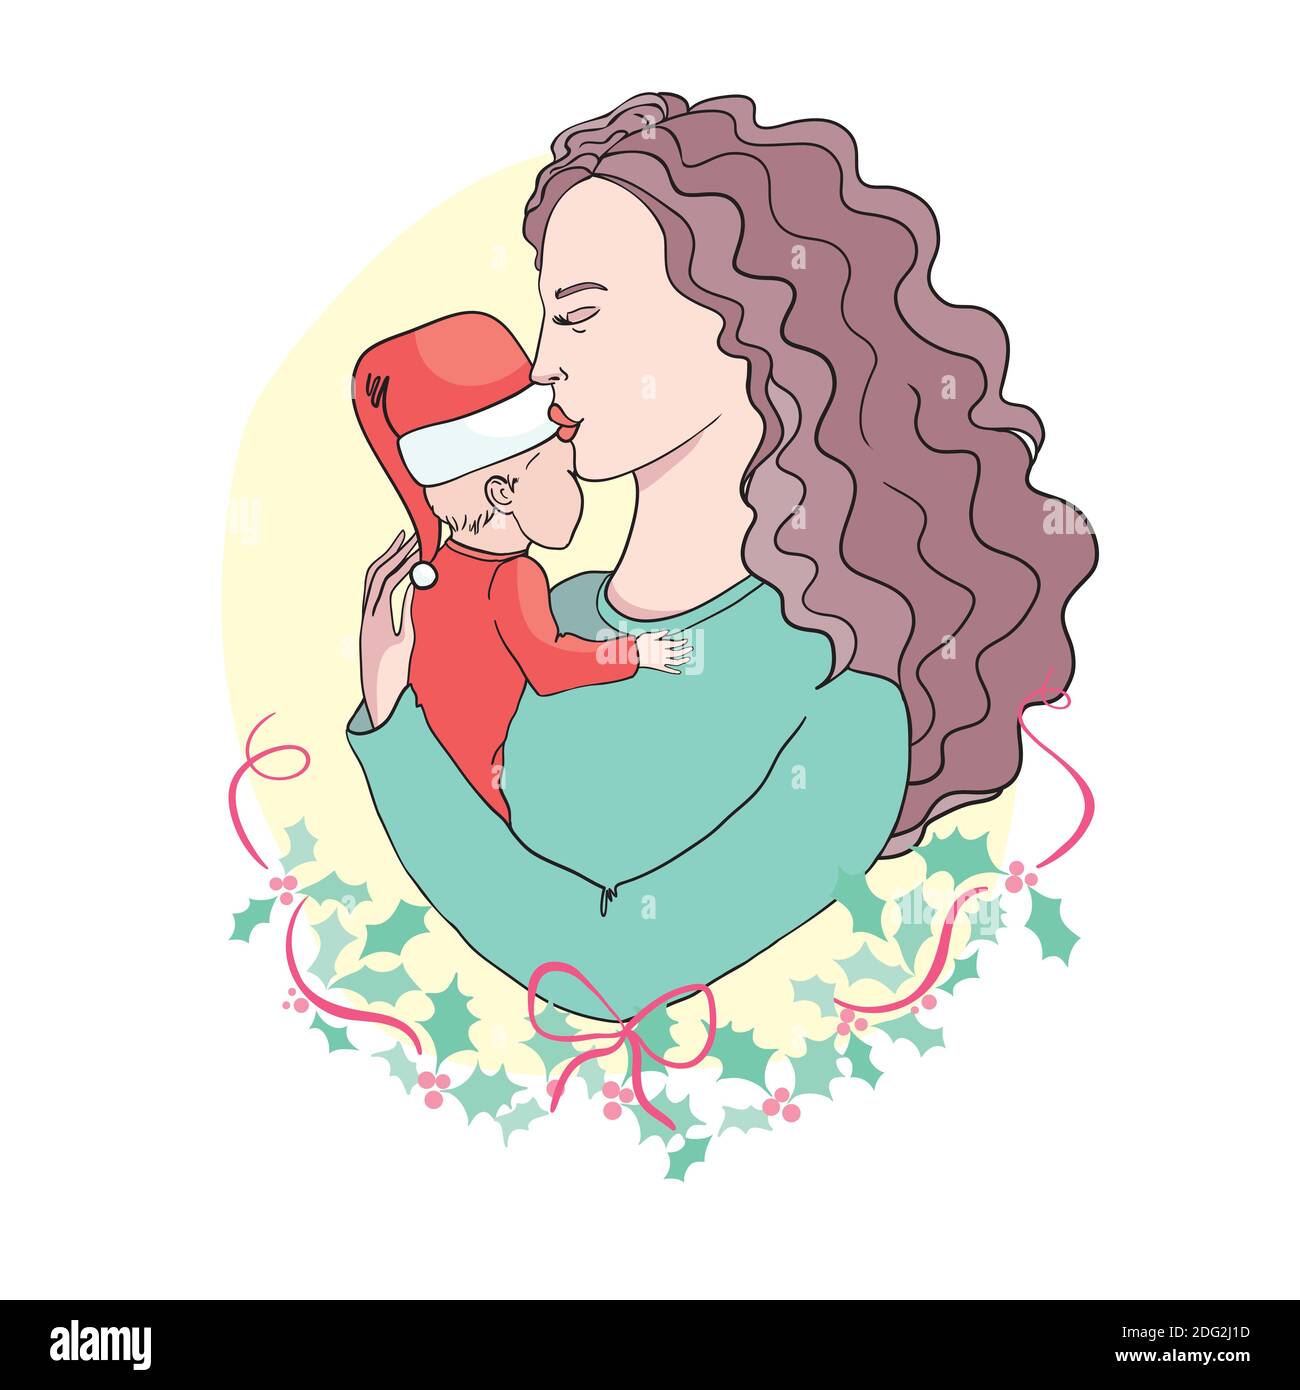 Frohe Weihnachten. Kindheit, Glück, Familie - kleines Kind und Mutter umarmt. Vektor-Logo, Text-Design. Stock Vektor